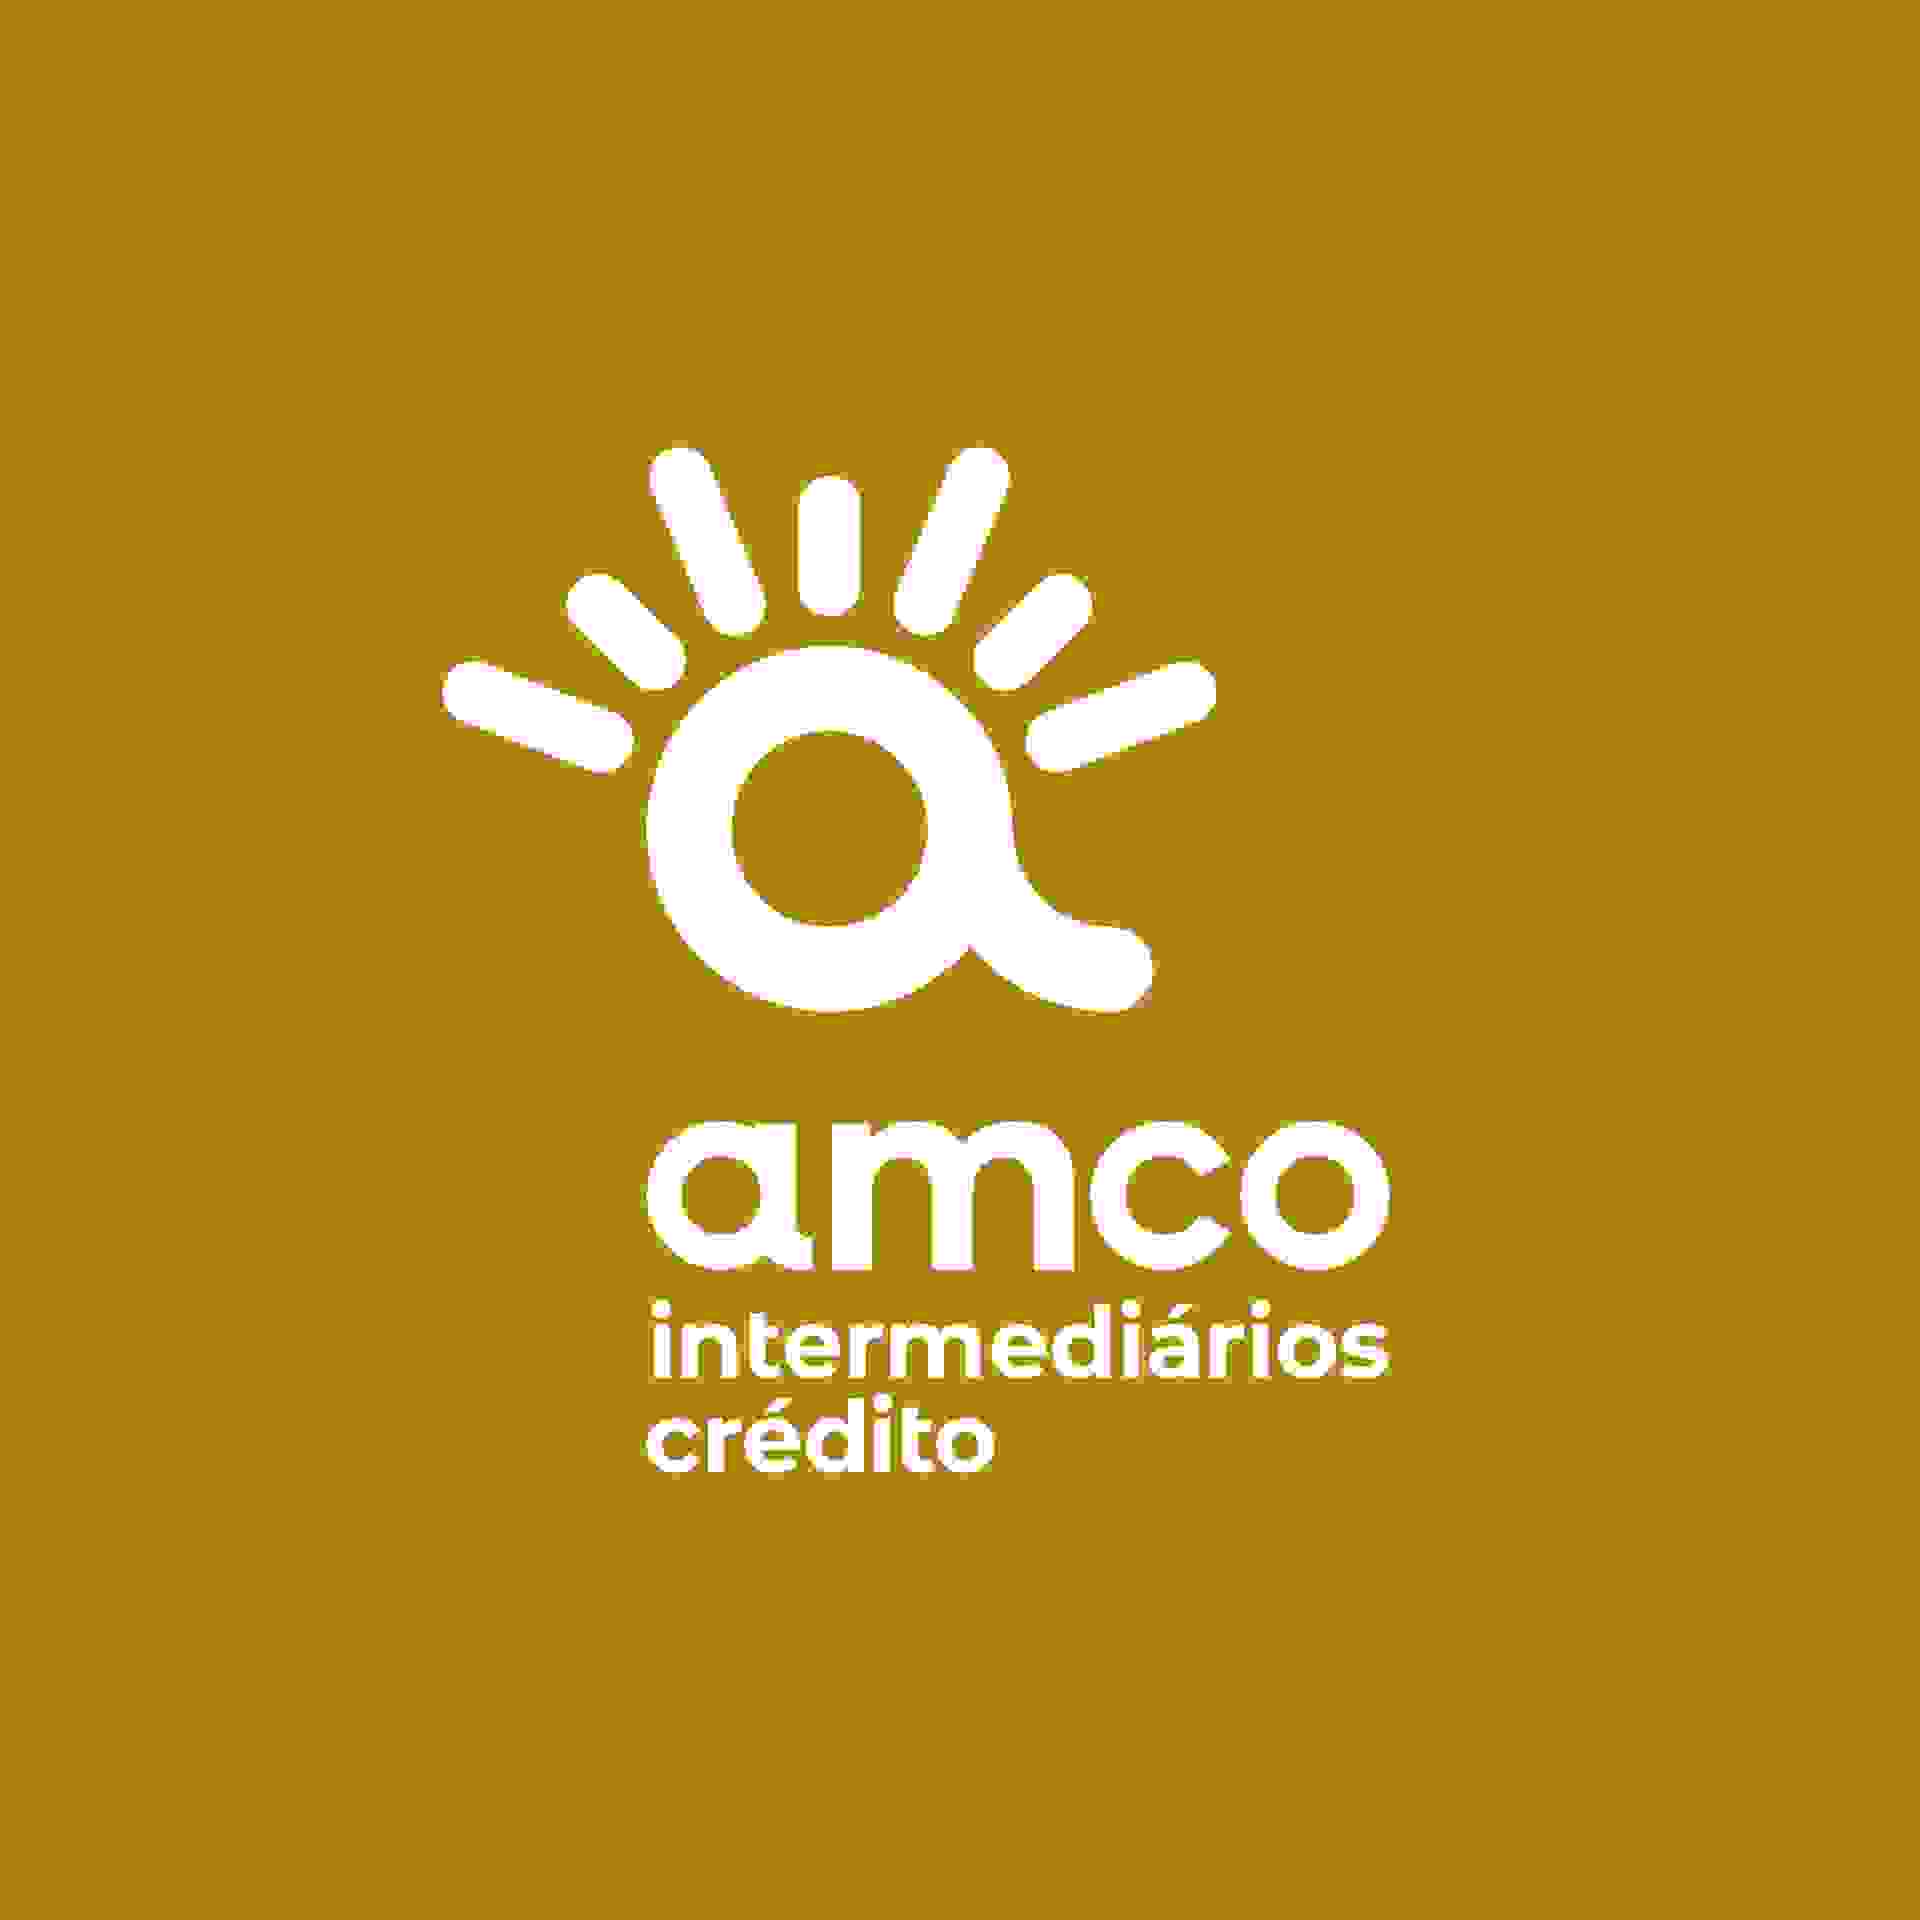 amco-intermediarios-de-credito